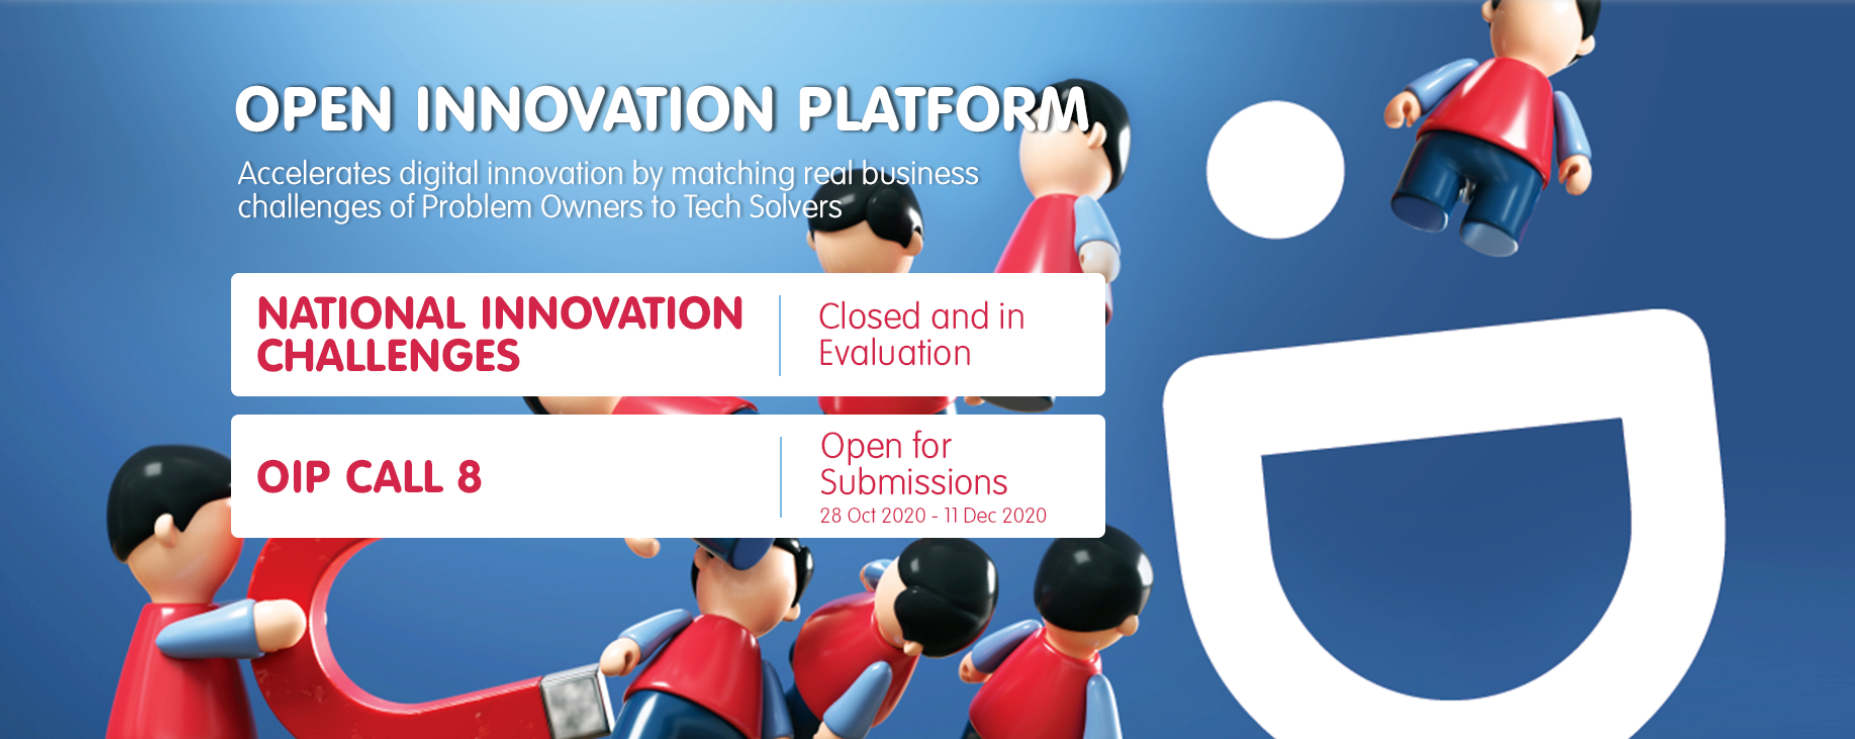 Open Innovation Platform Call 8